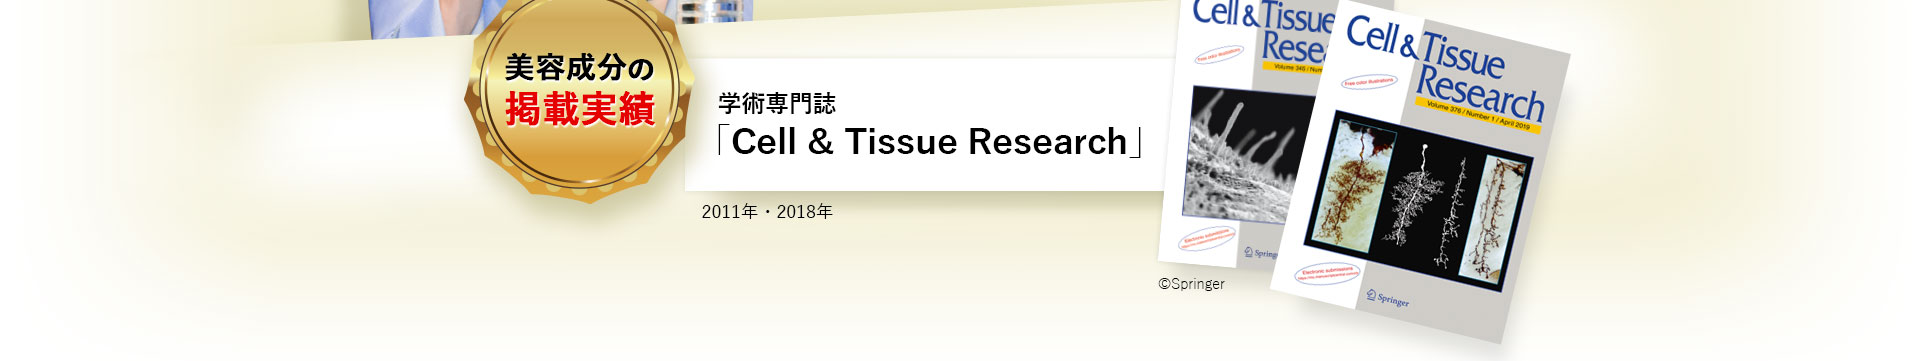 美容成分の掲載実績 学術専門誌 ｢Cell ＆ Tissue Research｣ 2011年5月18日